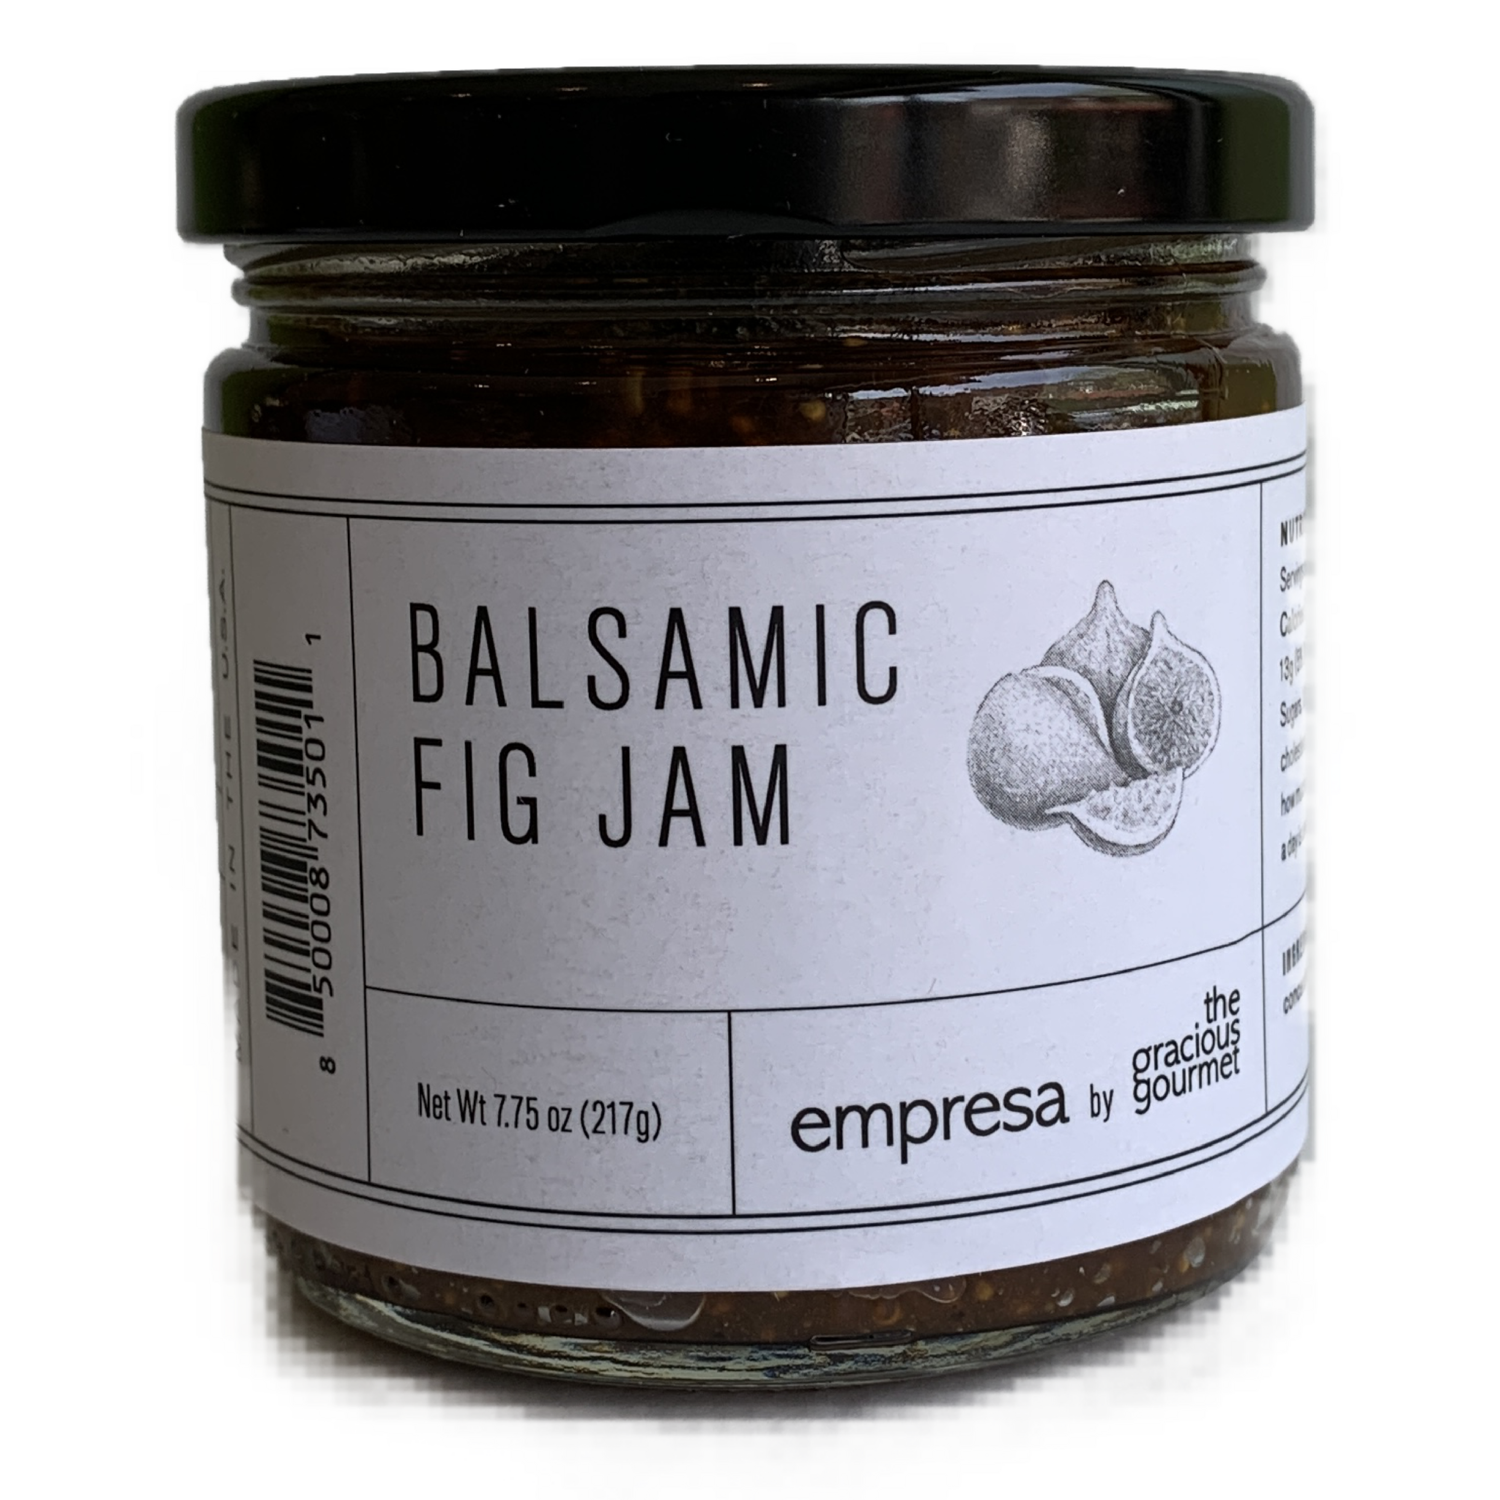 The Gracious Gourmet Balsamic Fig jam 